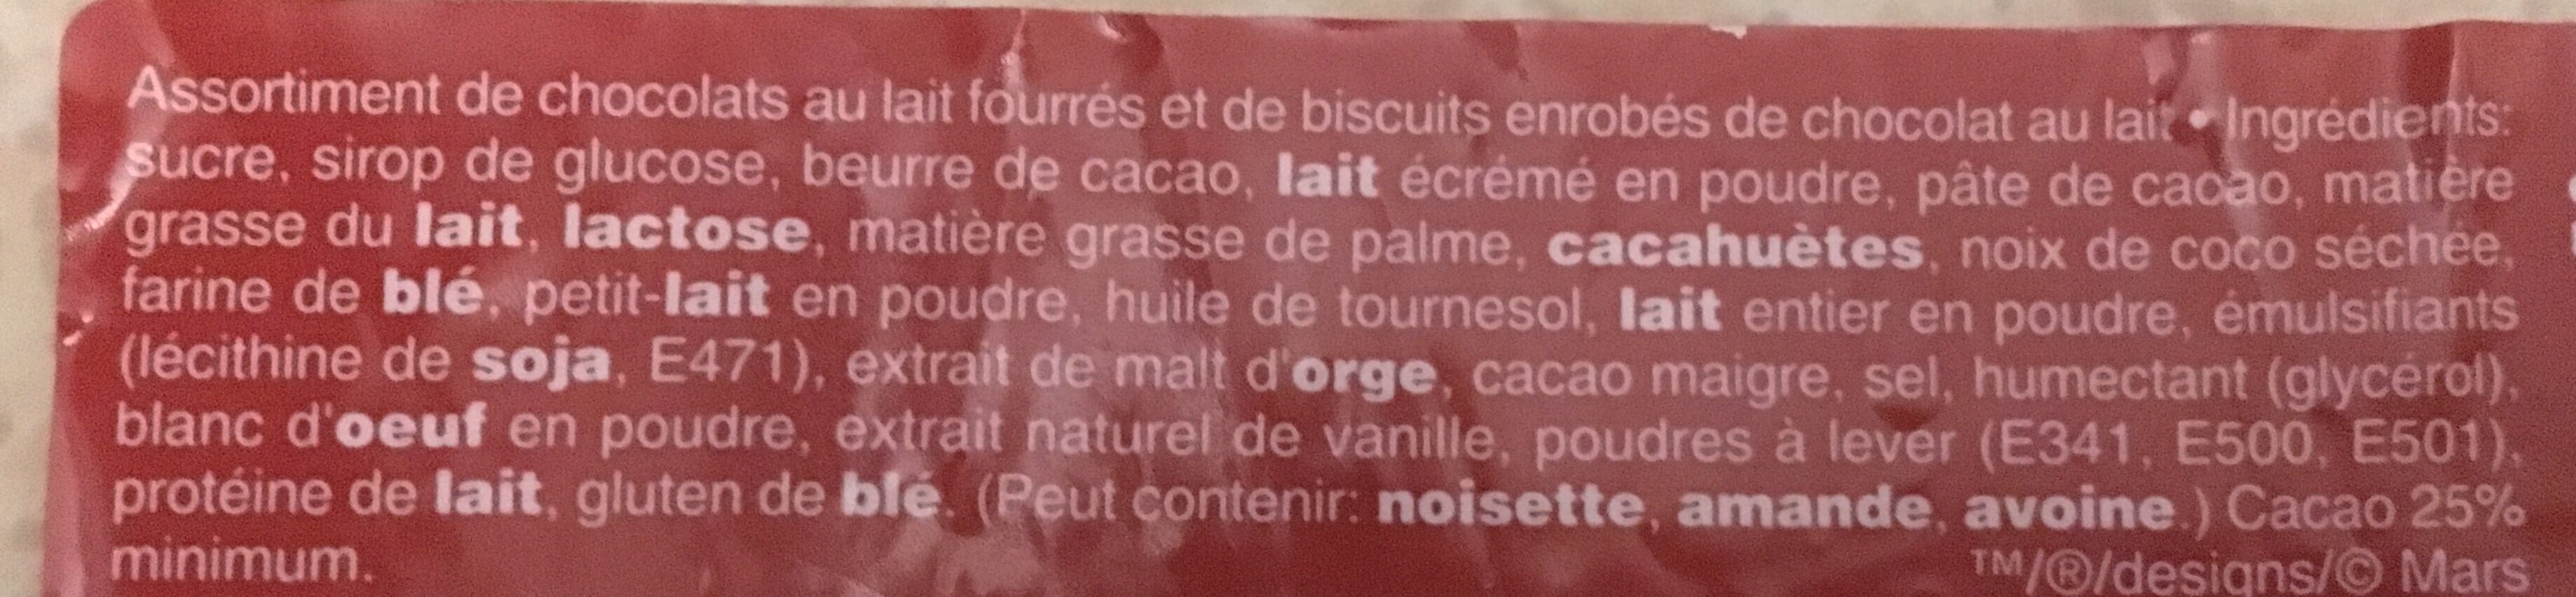 Bonbons chocolat Célébrations - Ingredients - fr